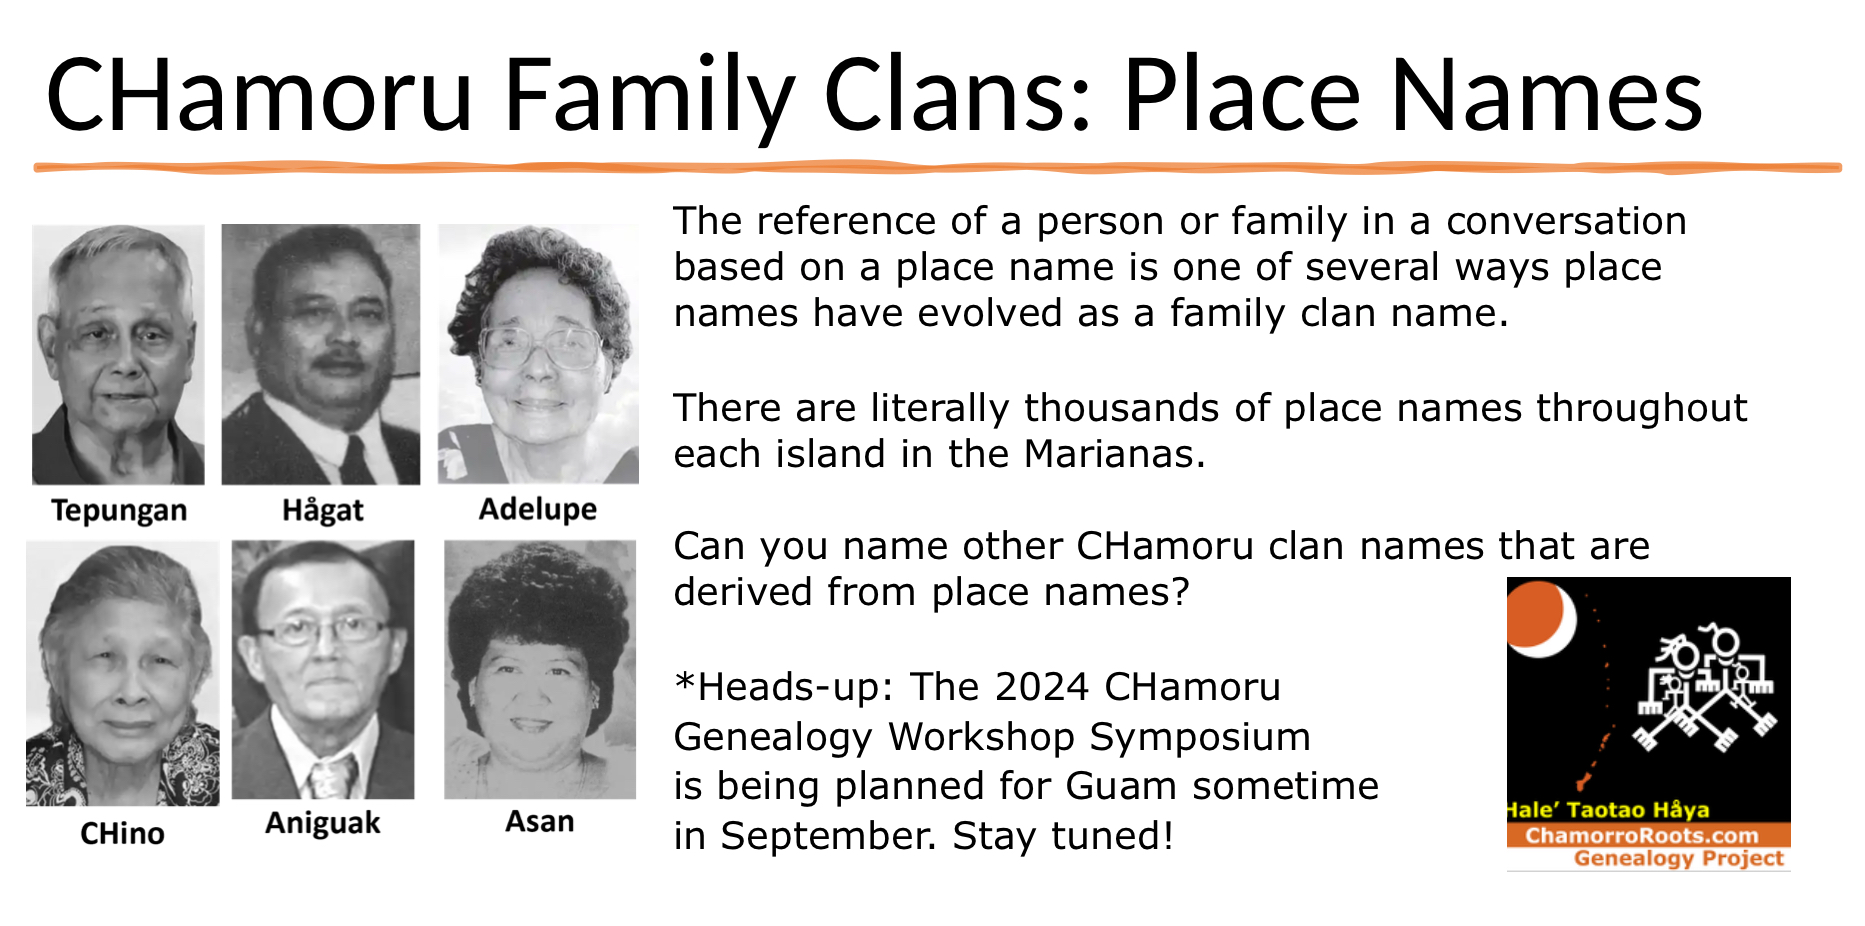 CHamoru Clan Name based on Place Names